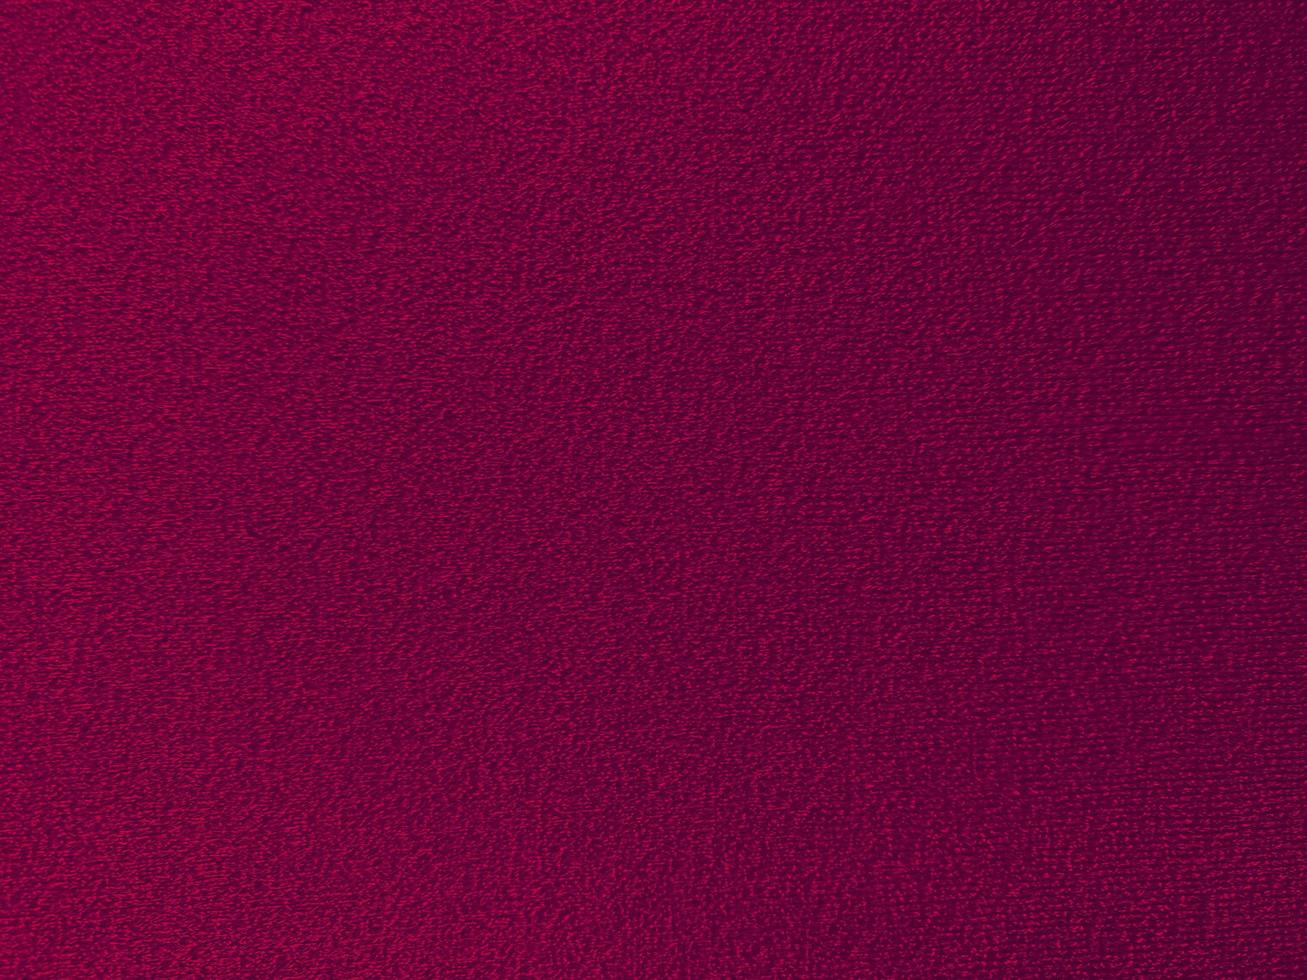 textura de tecido de algodão roxo magenta usada como plano de fundo. fundo de tecido roxo vazio de material têxtil macio e liso. há espaço para o texto.. foto